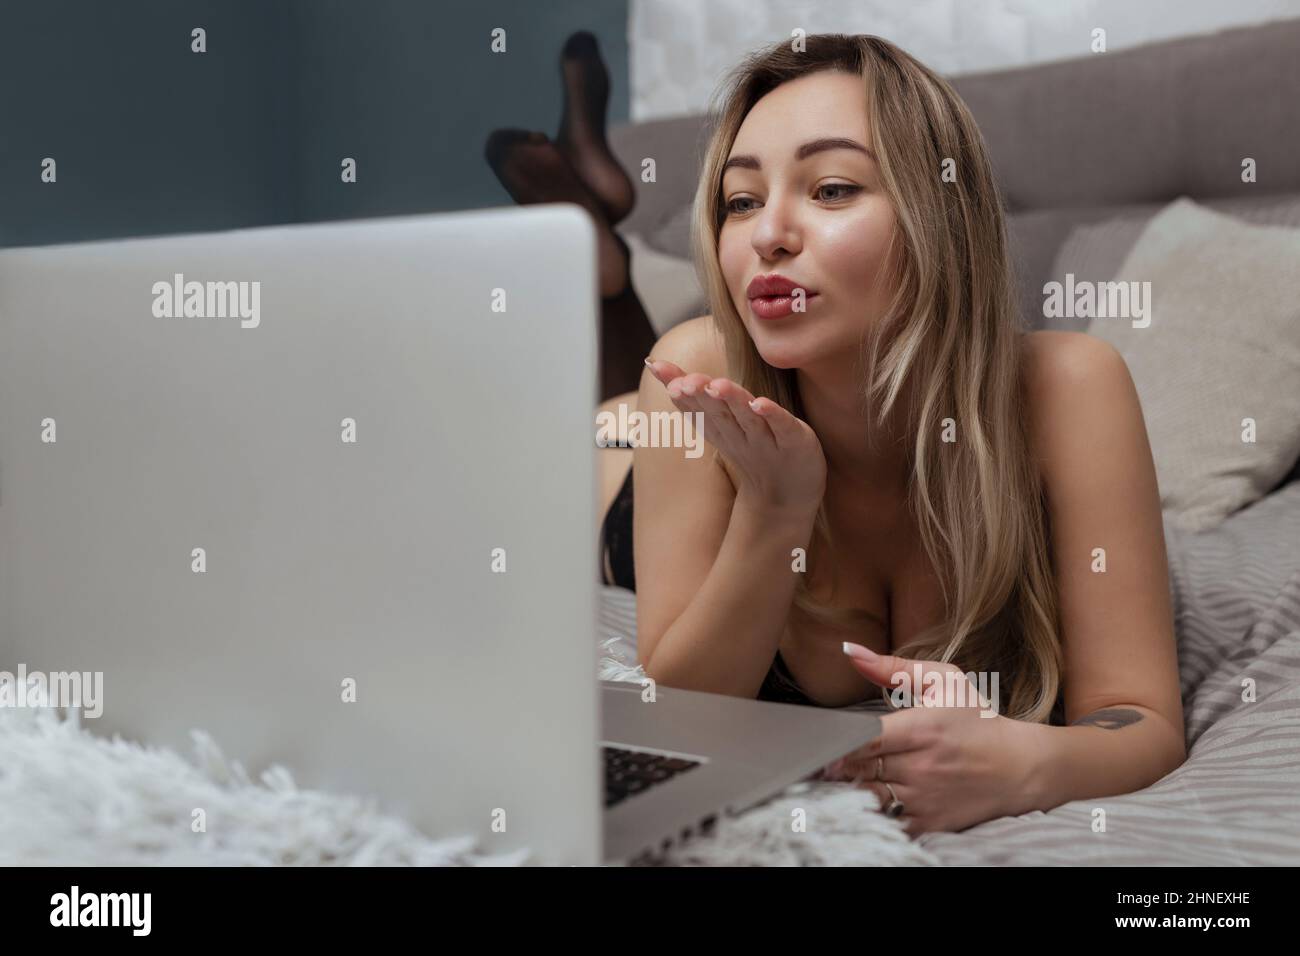 Ein schönes, junges Mädchen schießt eine Webcam, wirft einen Kuss in die Kamera, arbeitet als Model. Das Konzept des Online-Flirts, Sex im Internet Stockfoto